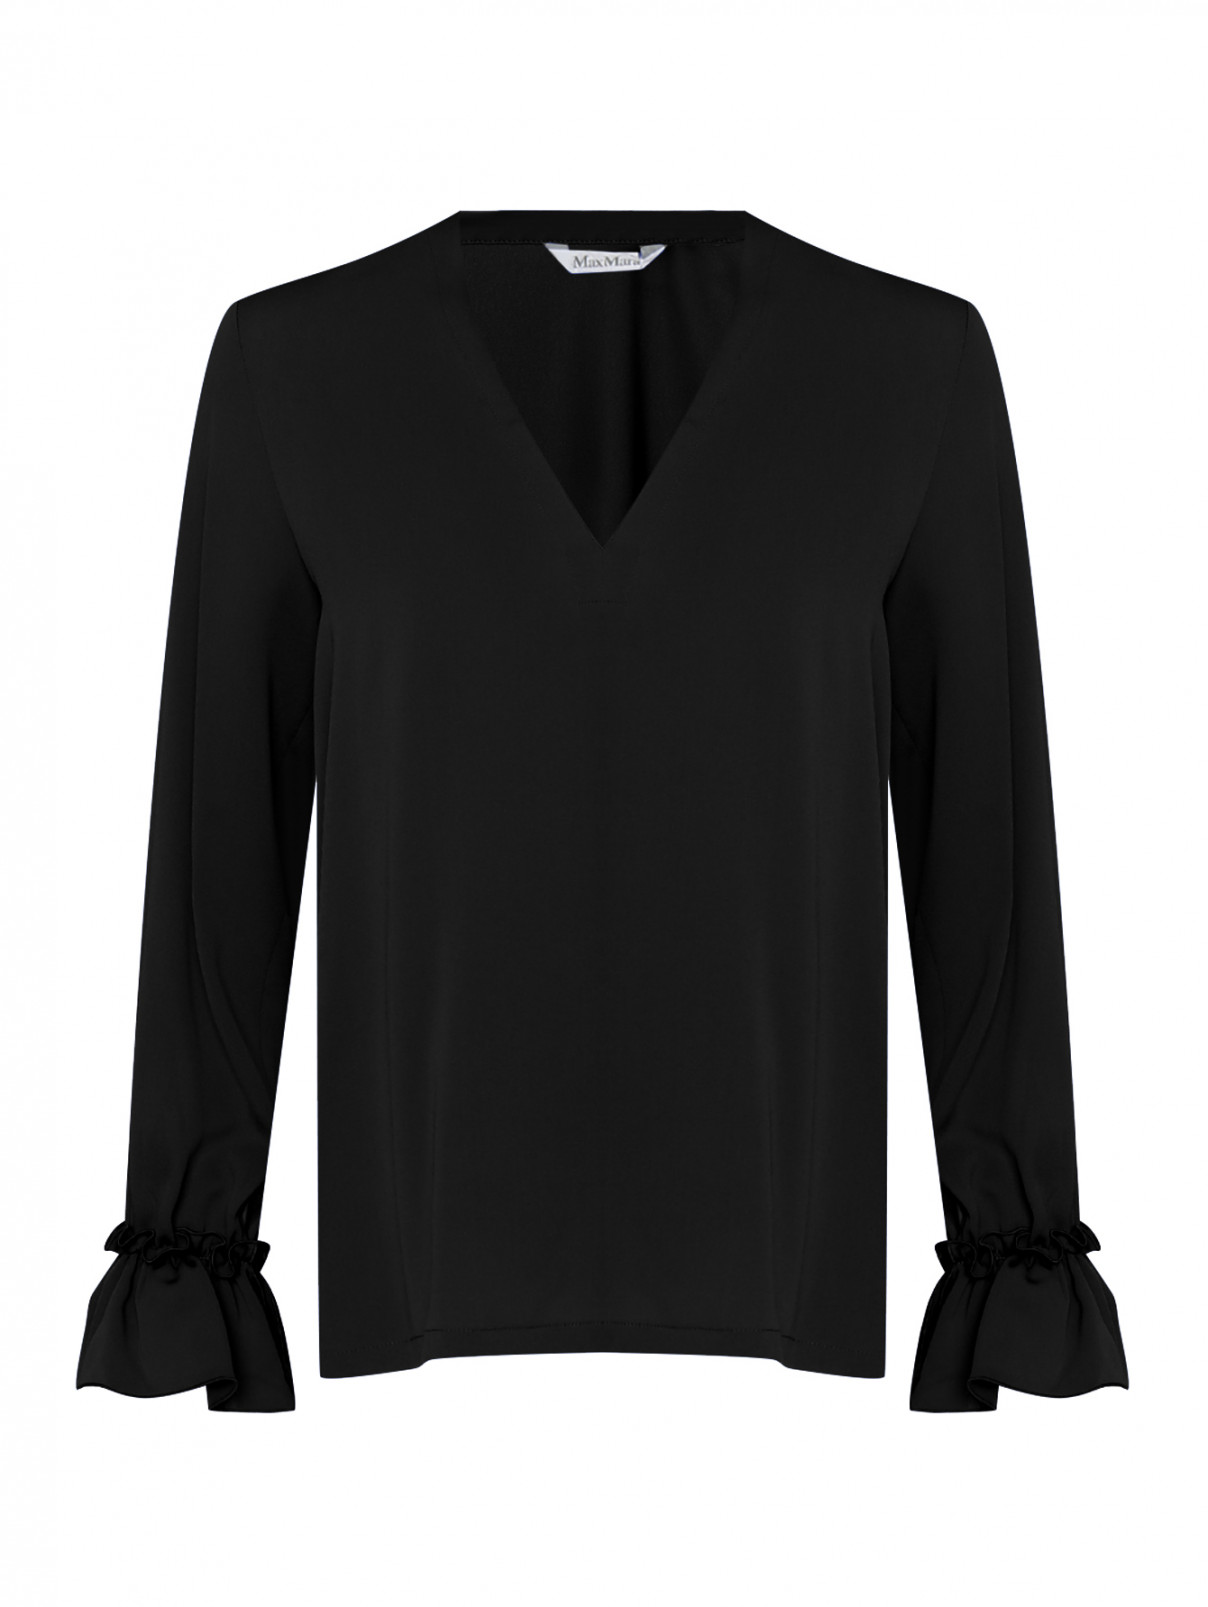 Блуза из шелка с v образным вырезом и драпировками на рукавах Max Mara  –  Общий вид  – Цвет:  Черный